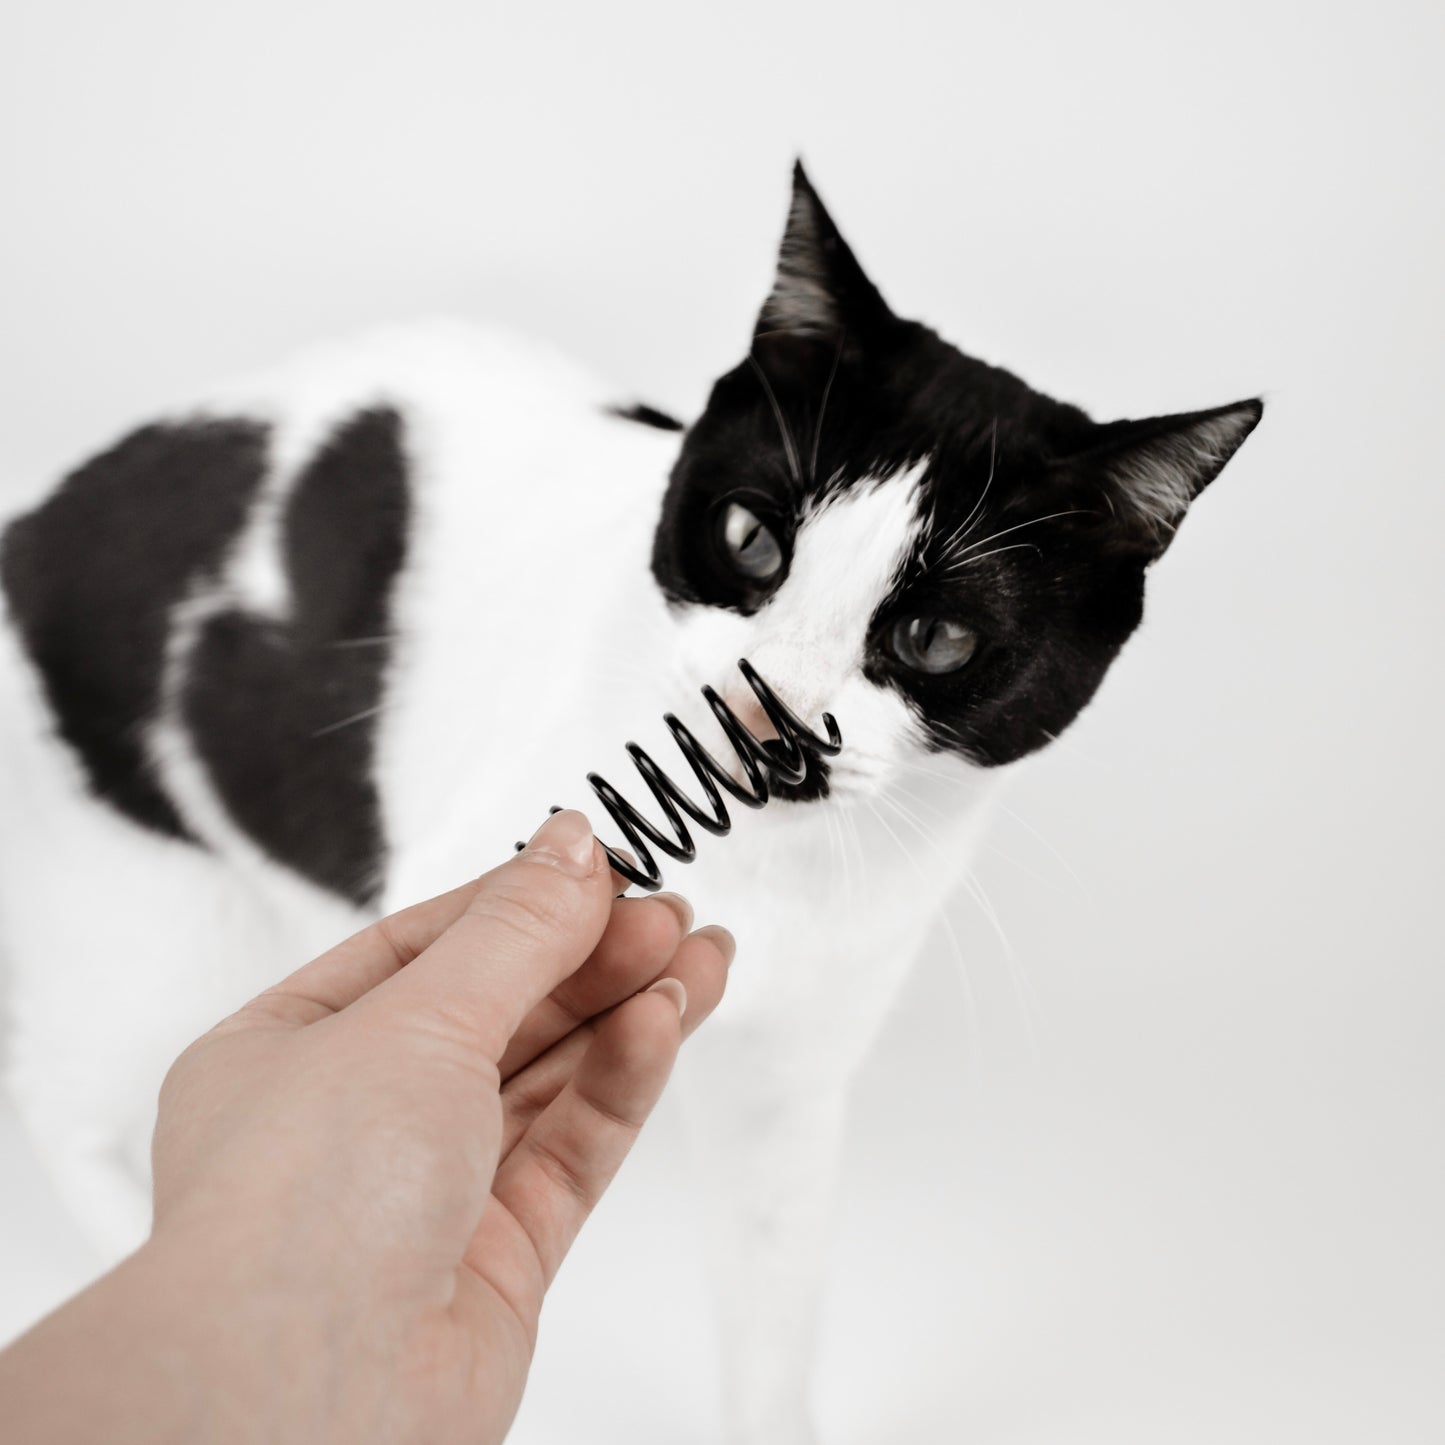 Spiralfeder Spielzeug für Katzen in schwarz und weiß.